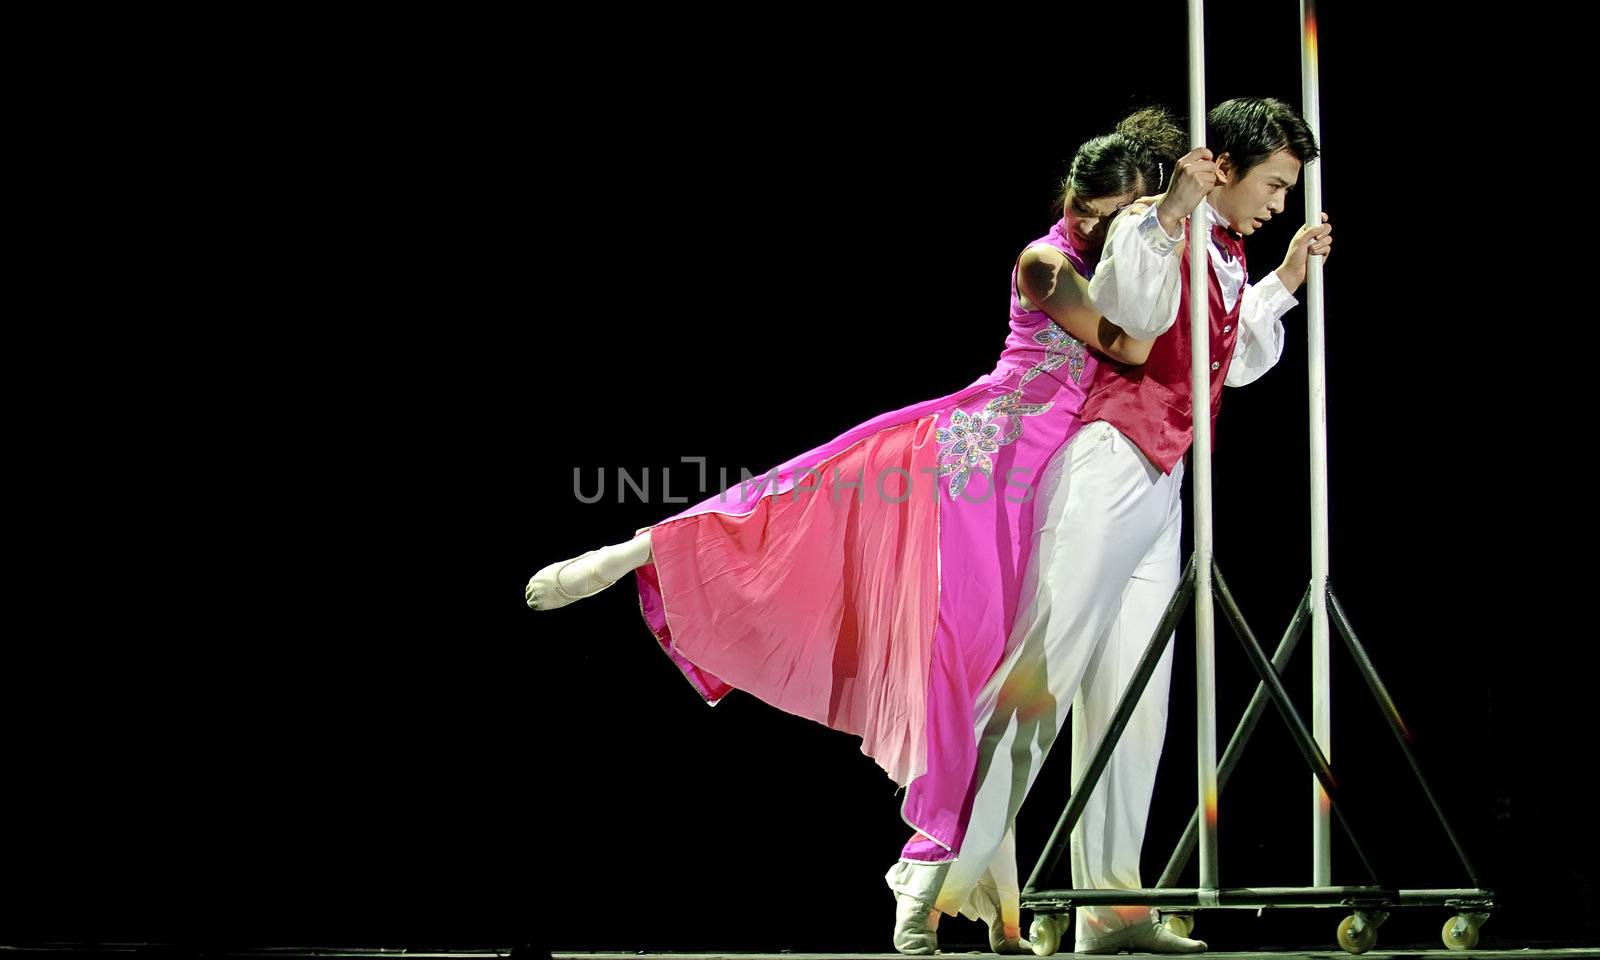 CHENGDU - DEC 13: chinese dancers perform modern Duo dance on stage at JINCHENG theate.Dec 13,2007 in Chengdu, China.
Choreographer: Ma Bin, Jiao Hongji, Cast: Ma Bin, Zhang Yu